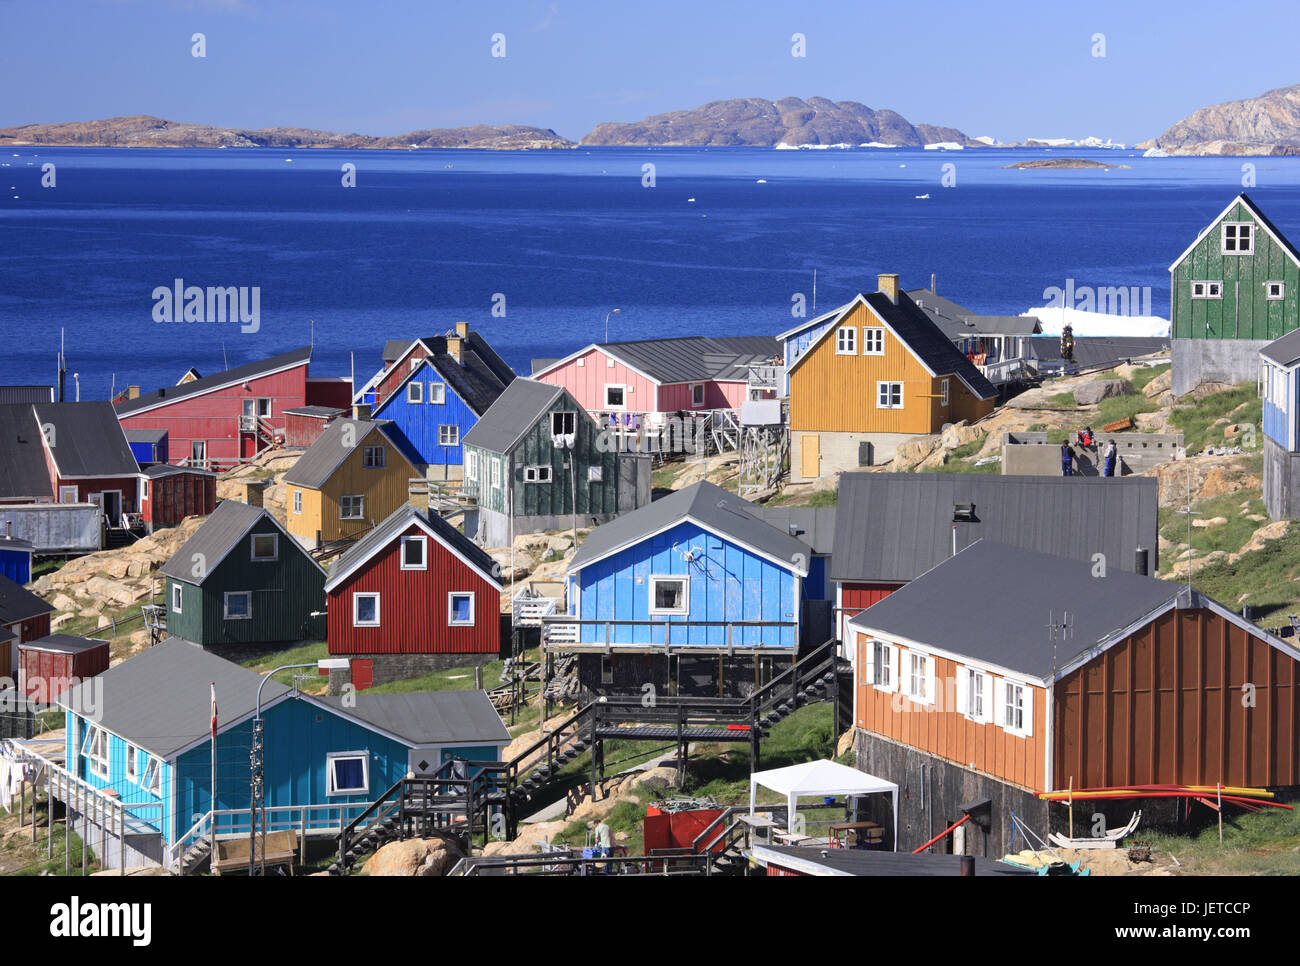 La Groenlandia, Upernavik, vista città, case residenziali, nel nord-ovest della Groenlandia, costa, città, l'Artico, case, case in legno, architettura, costruzione in legno modo, tipicamente per paese, luminosamente, rocce, acqua, mare blu, Foto Stock